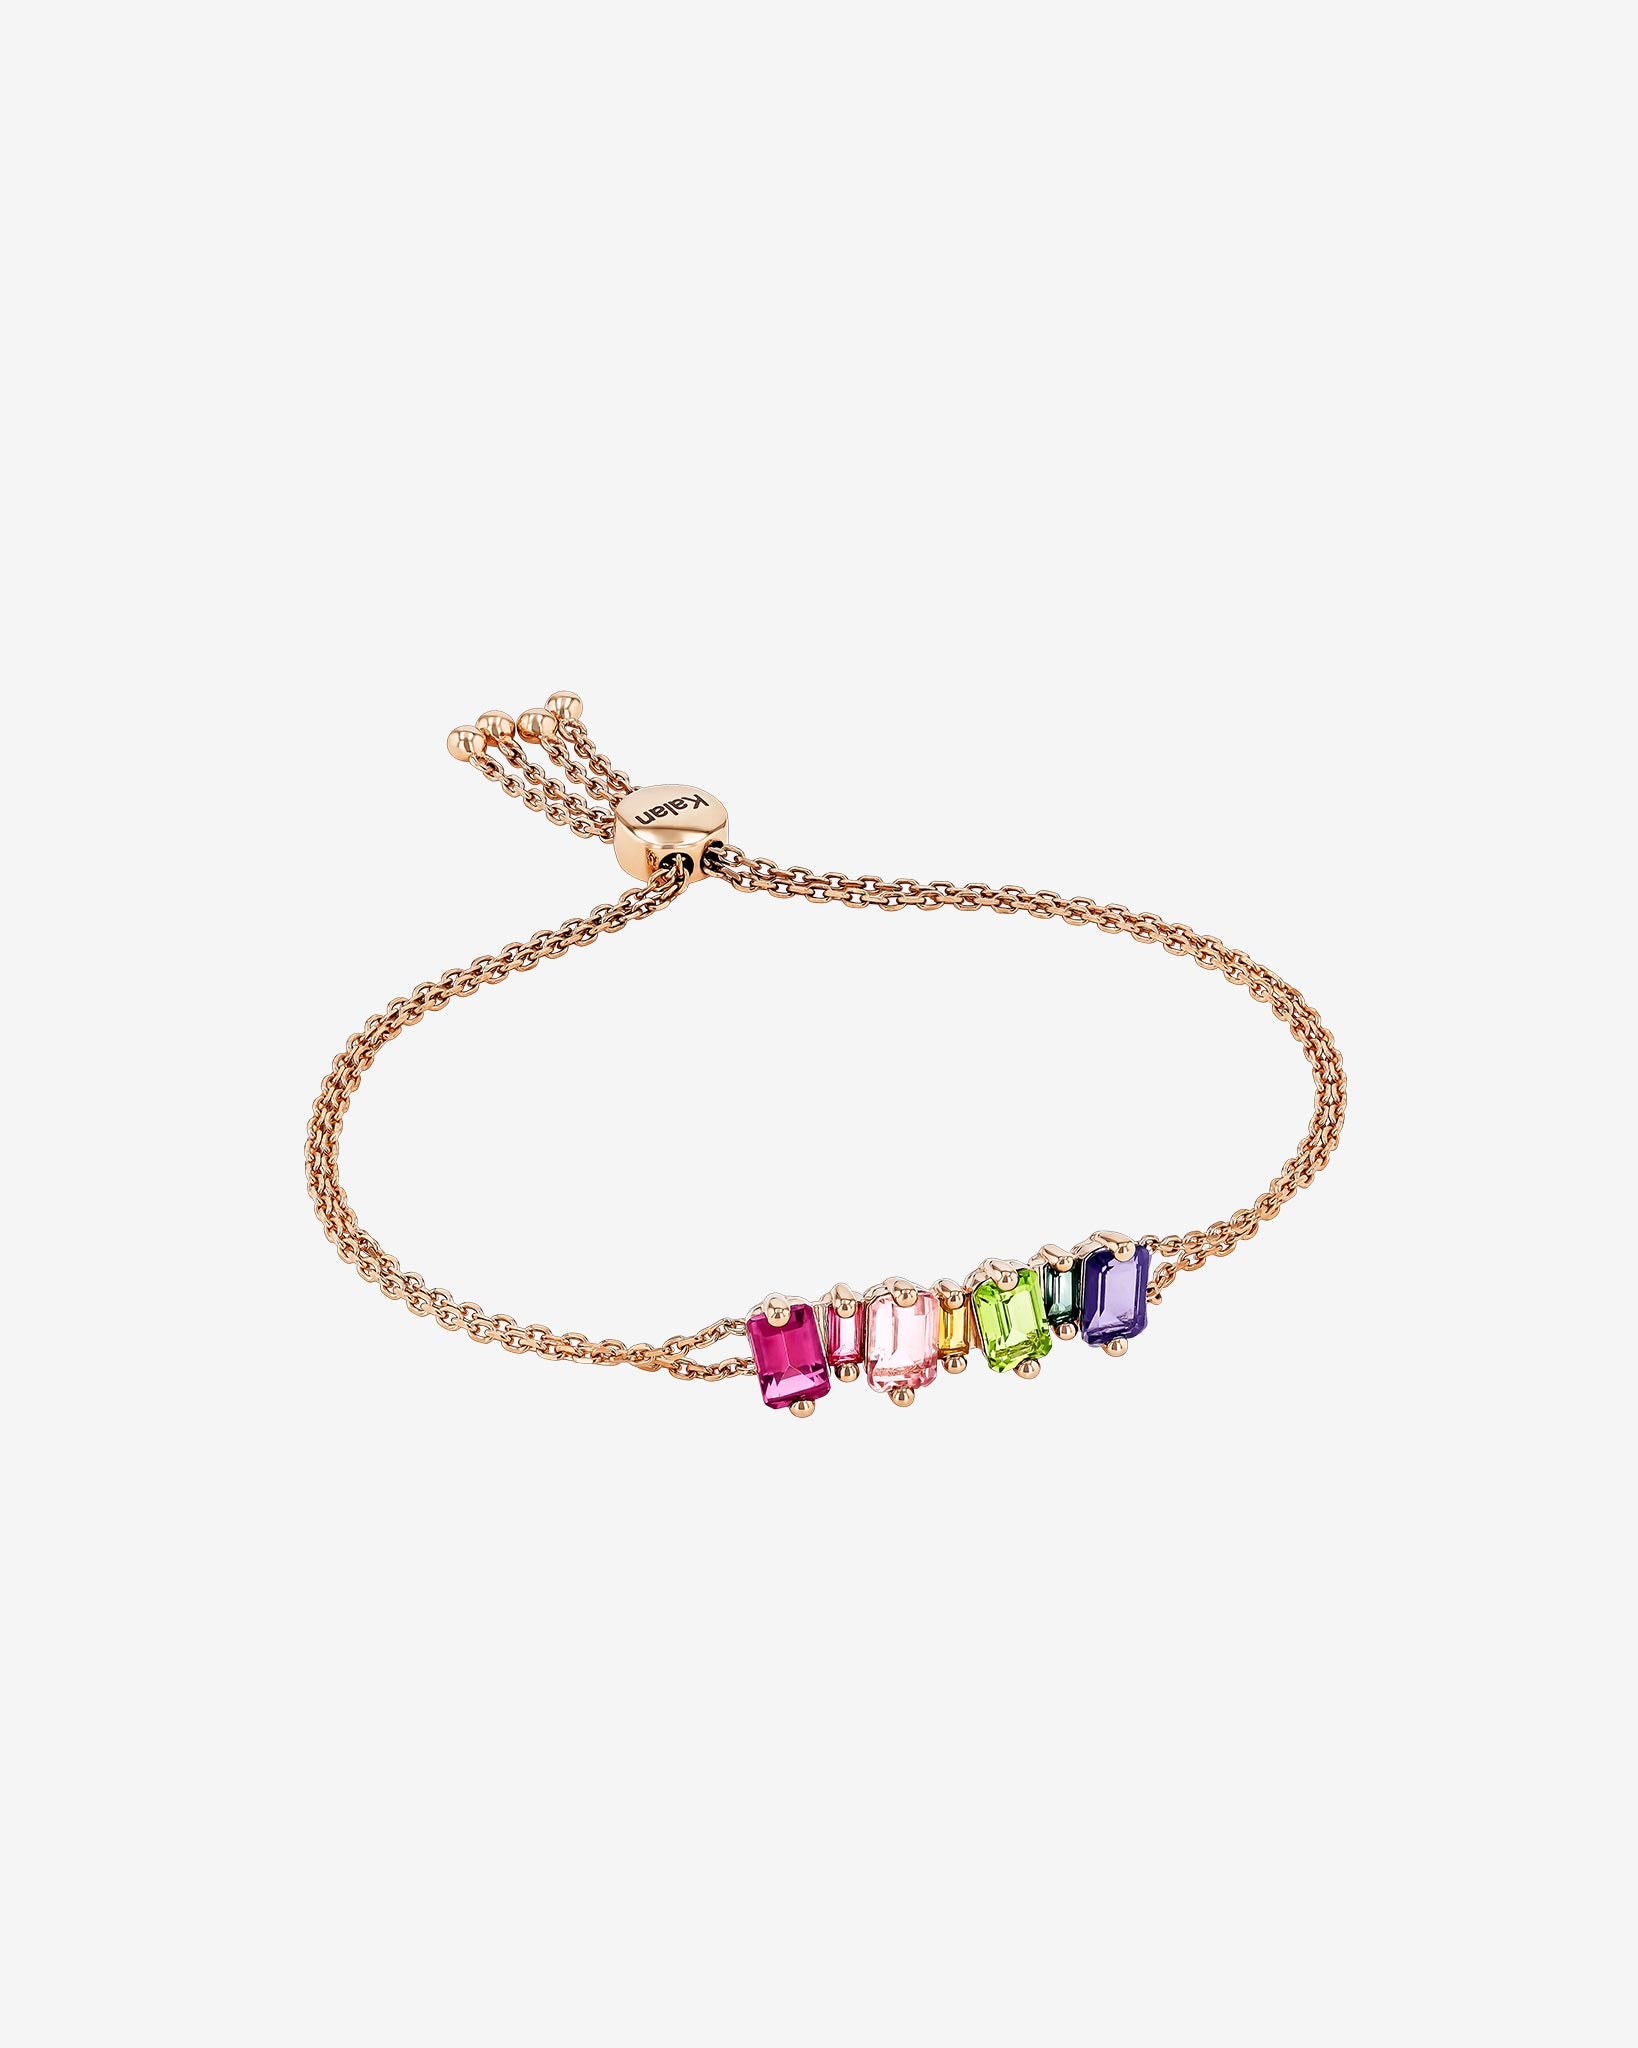 Kalan By Suzanne Kalan Ann Emerald Cut Rainbow Pulley Bracelet in 14k rose gold